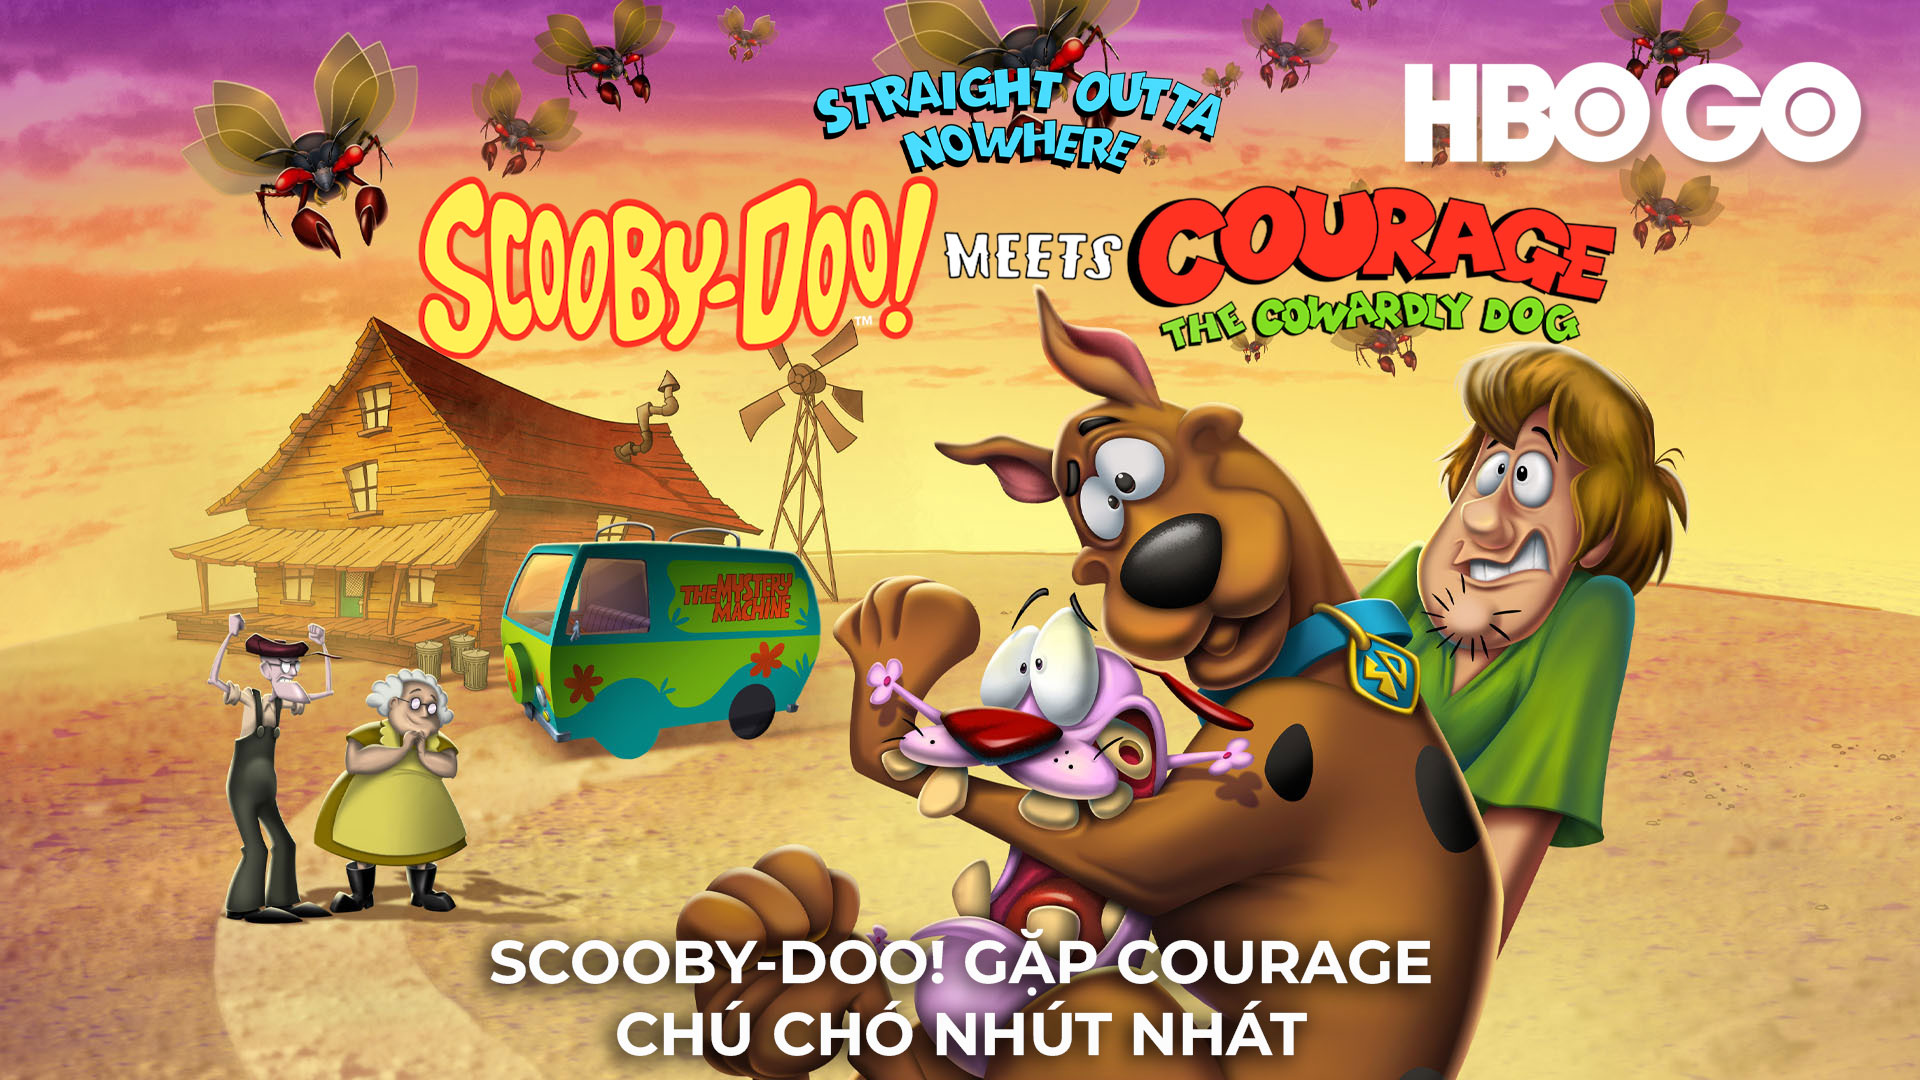 Scooby-Doo! Gặp Courage, Chú Chó Nhút Nhát | Fpt Play